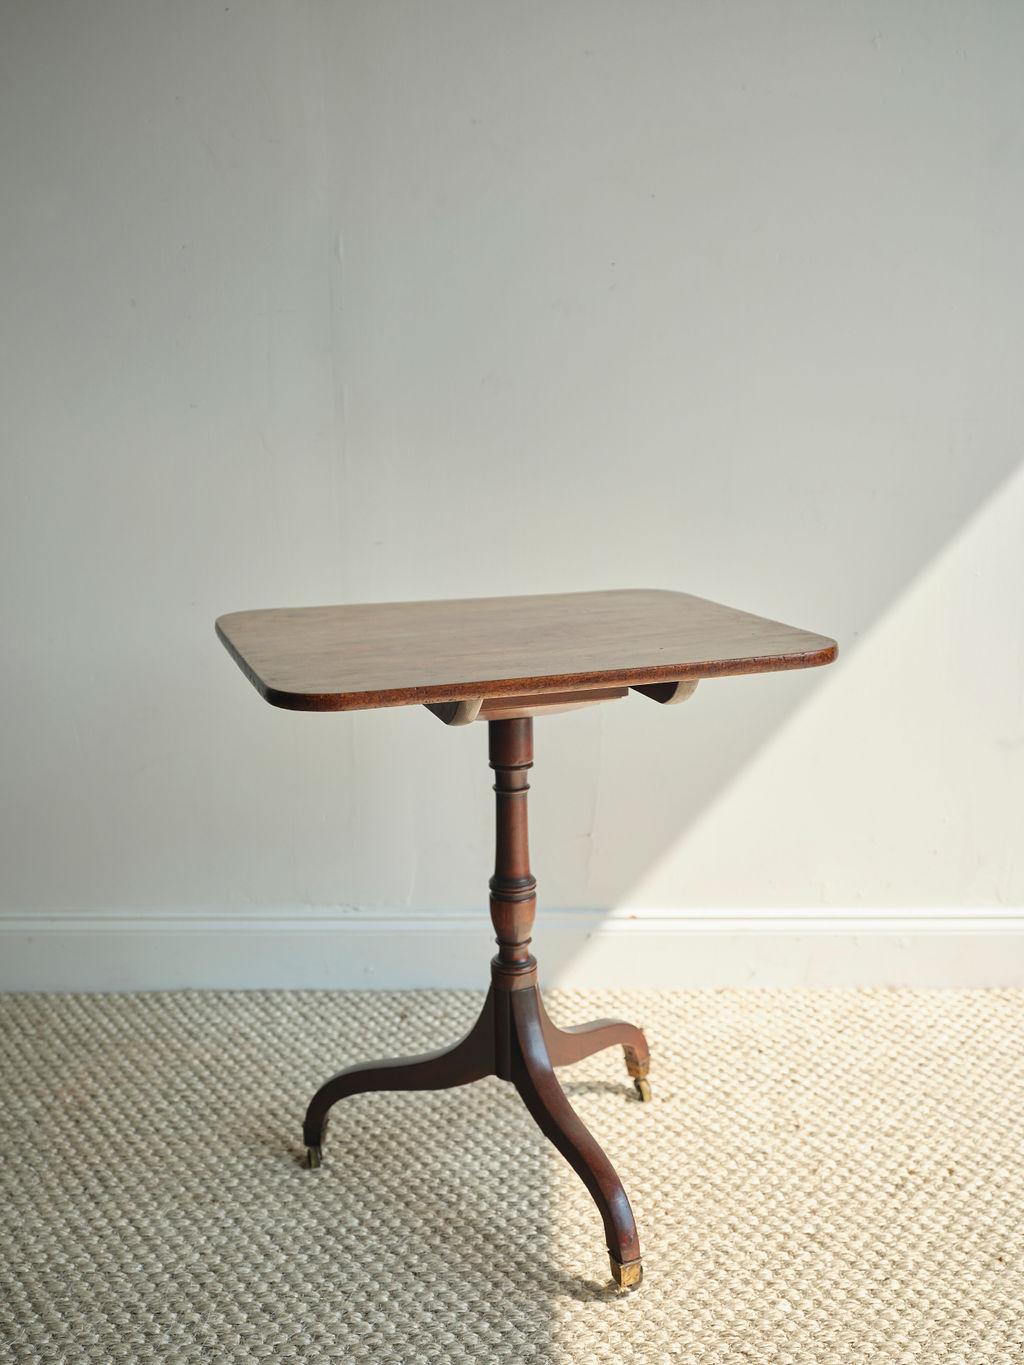 Cette table à plateau basculant du début du XIXe siècle est fabriquée en acajou et présente une belle teinte brun foncé. Comme d'autres meubles fabriqués à l'époque de George III, cette table a été construite pour mettre en valeur la beauté de son